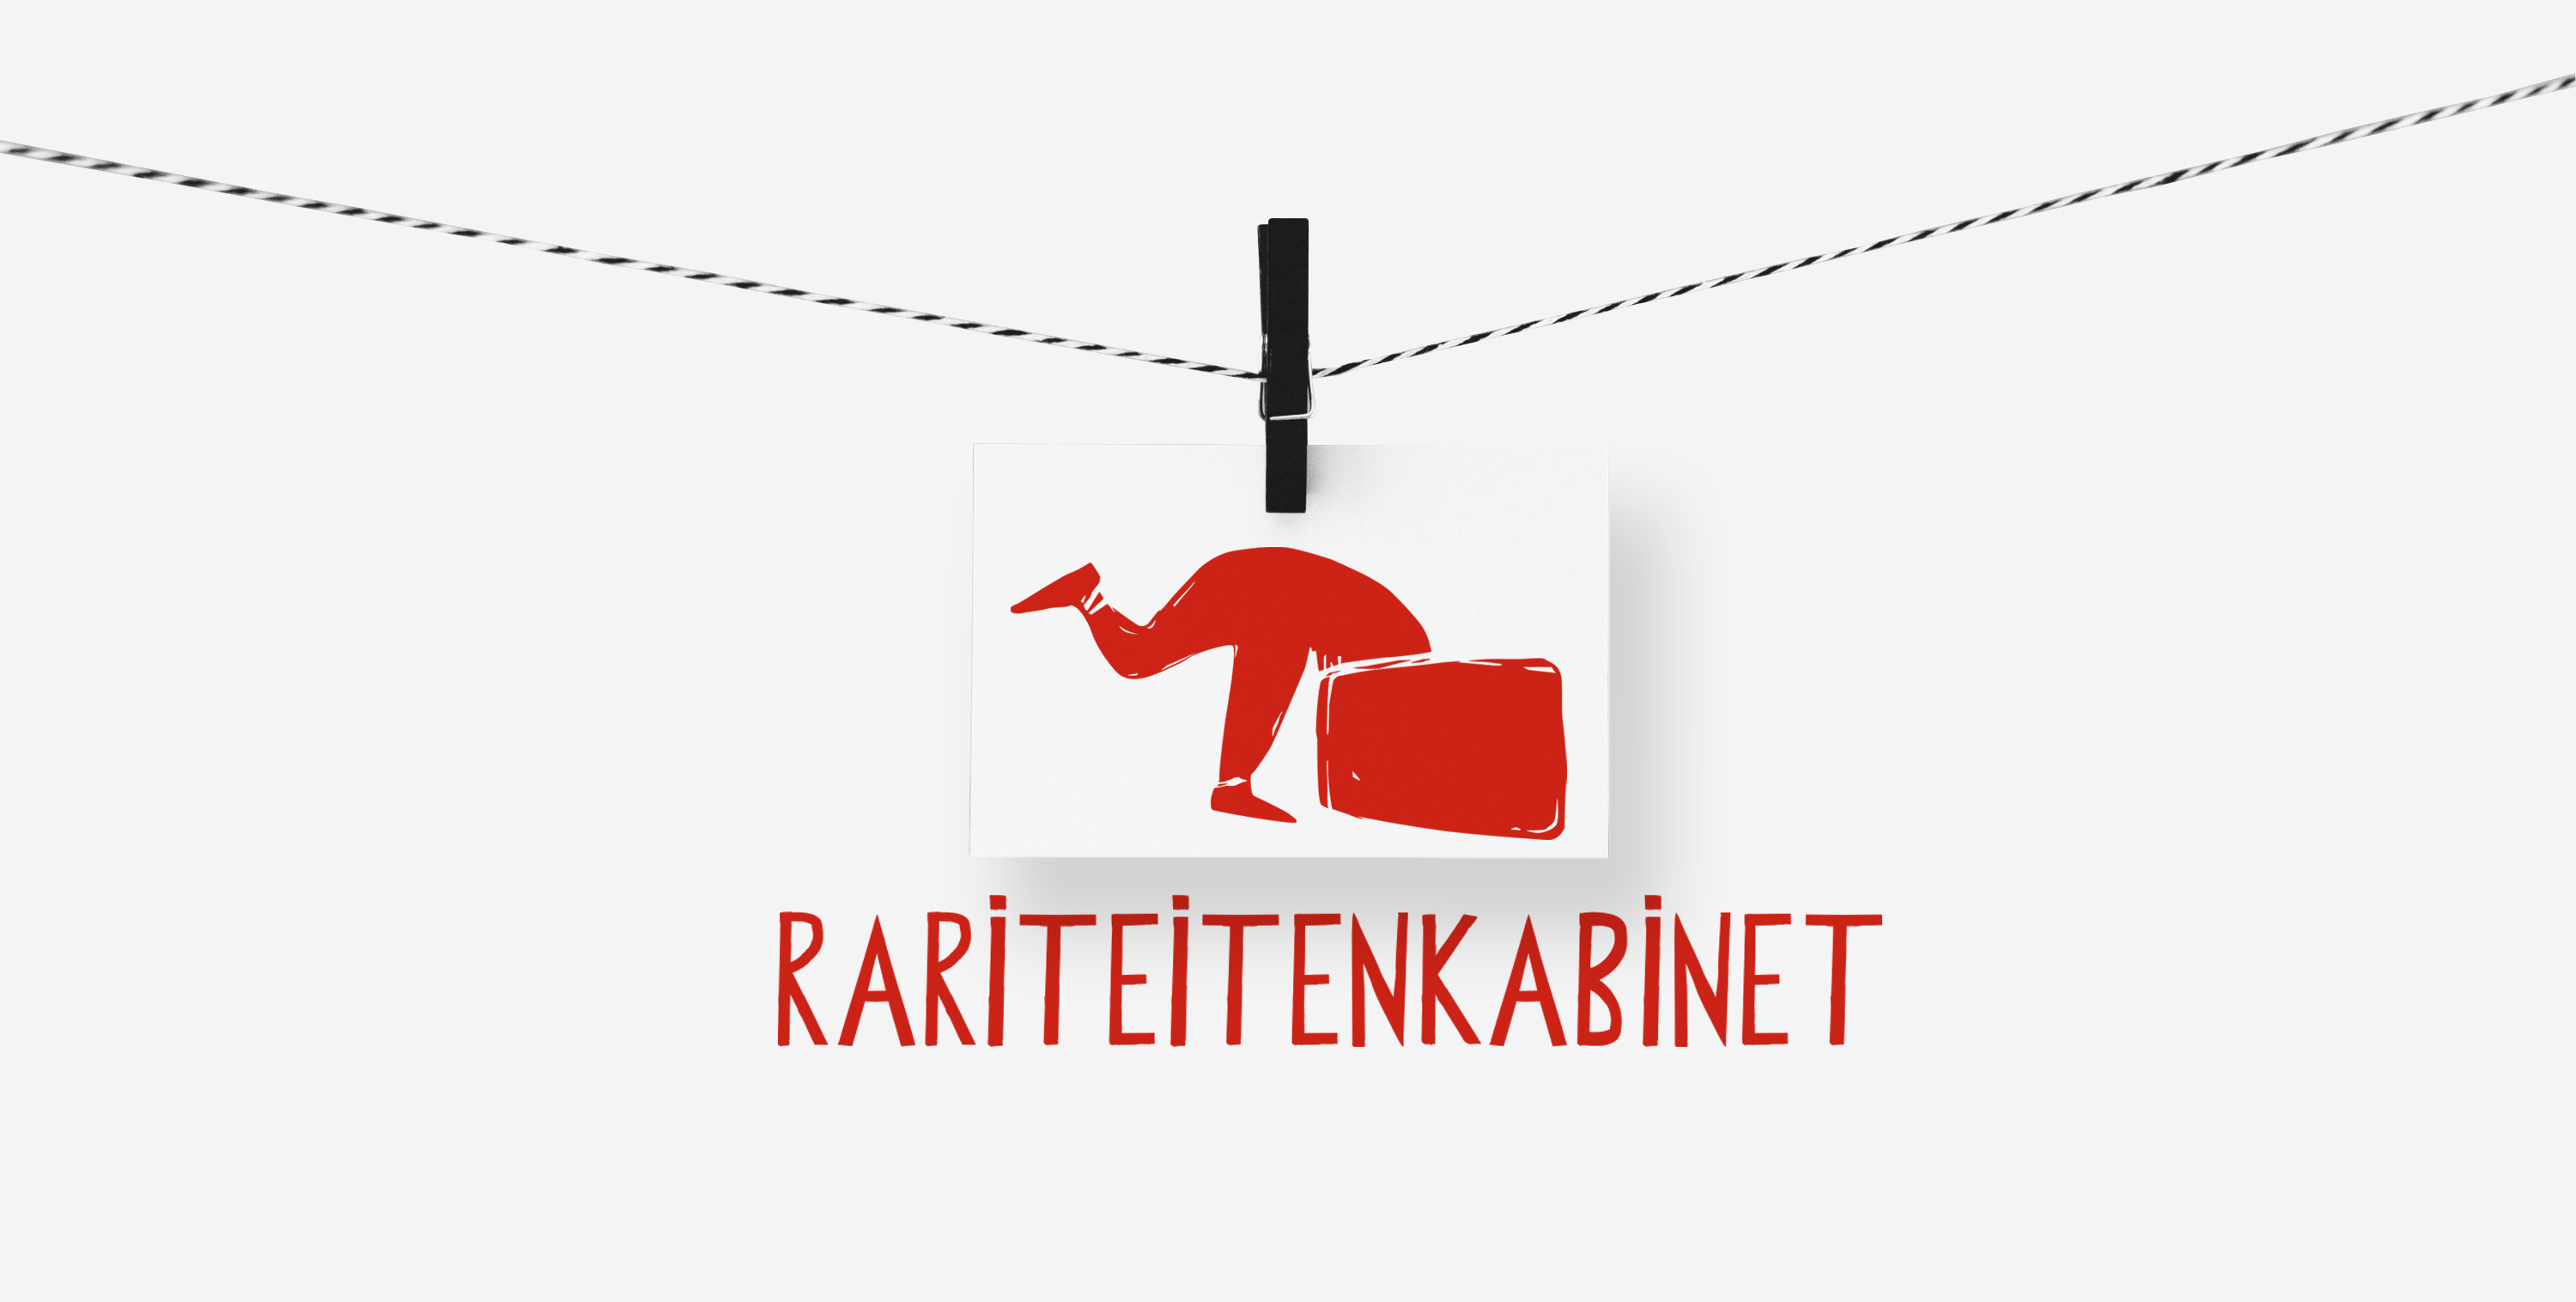 Rariteitenkabinet-logo-hang-2